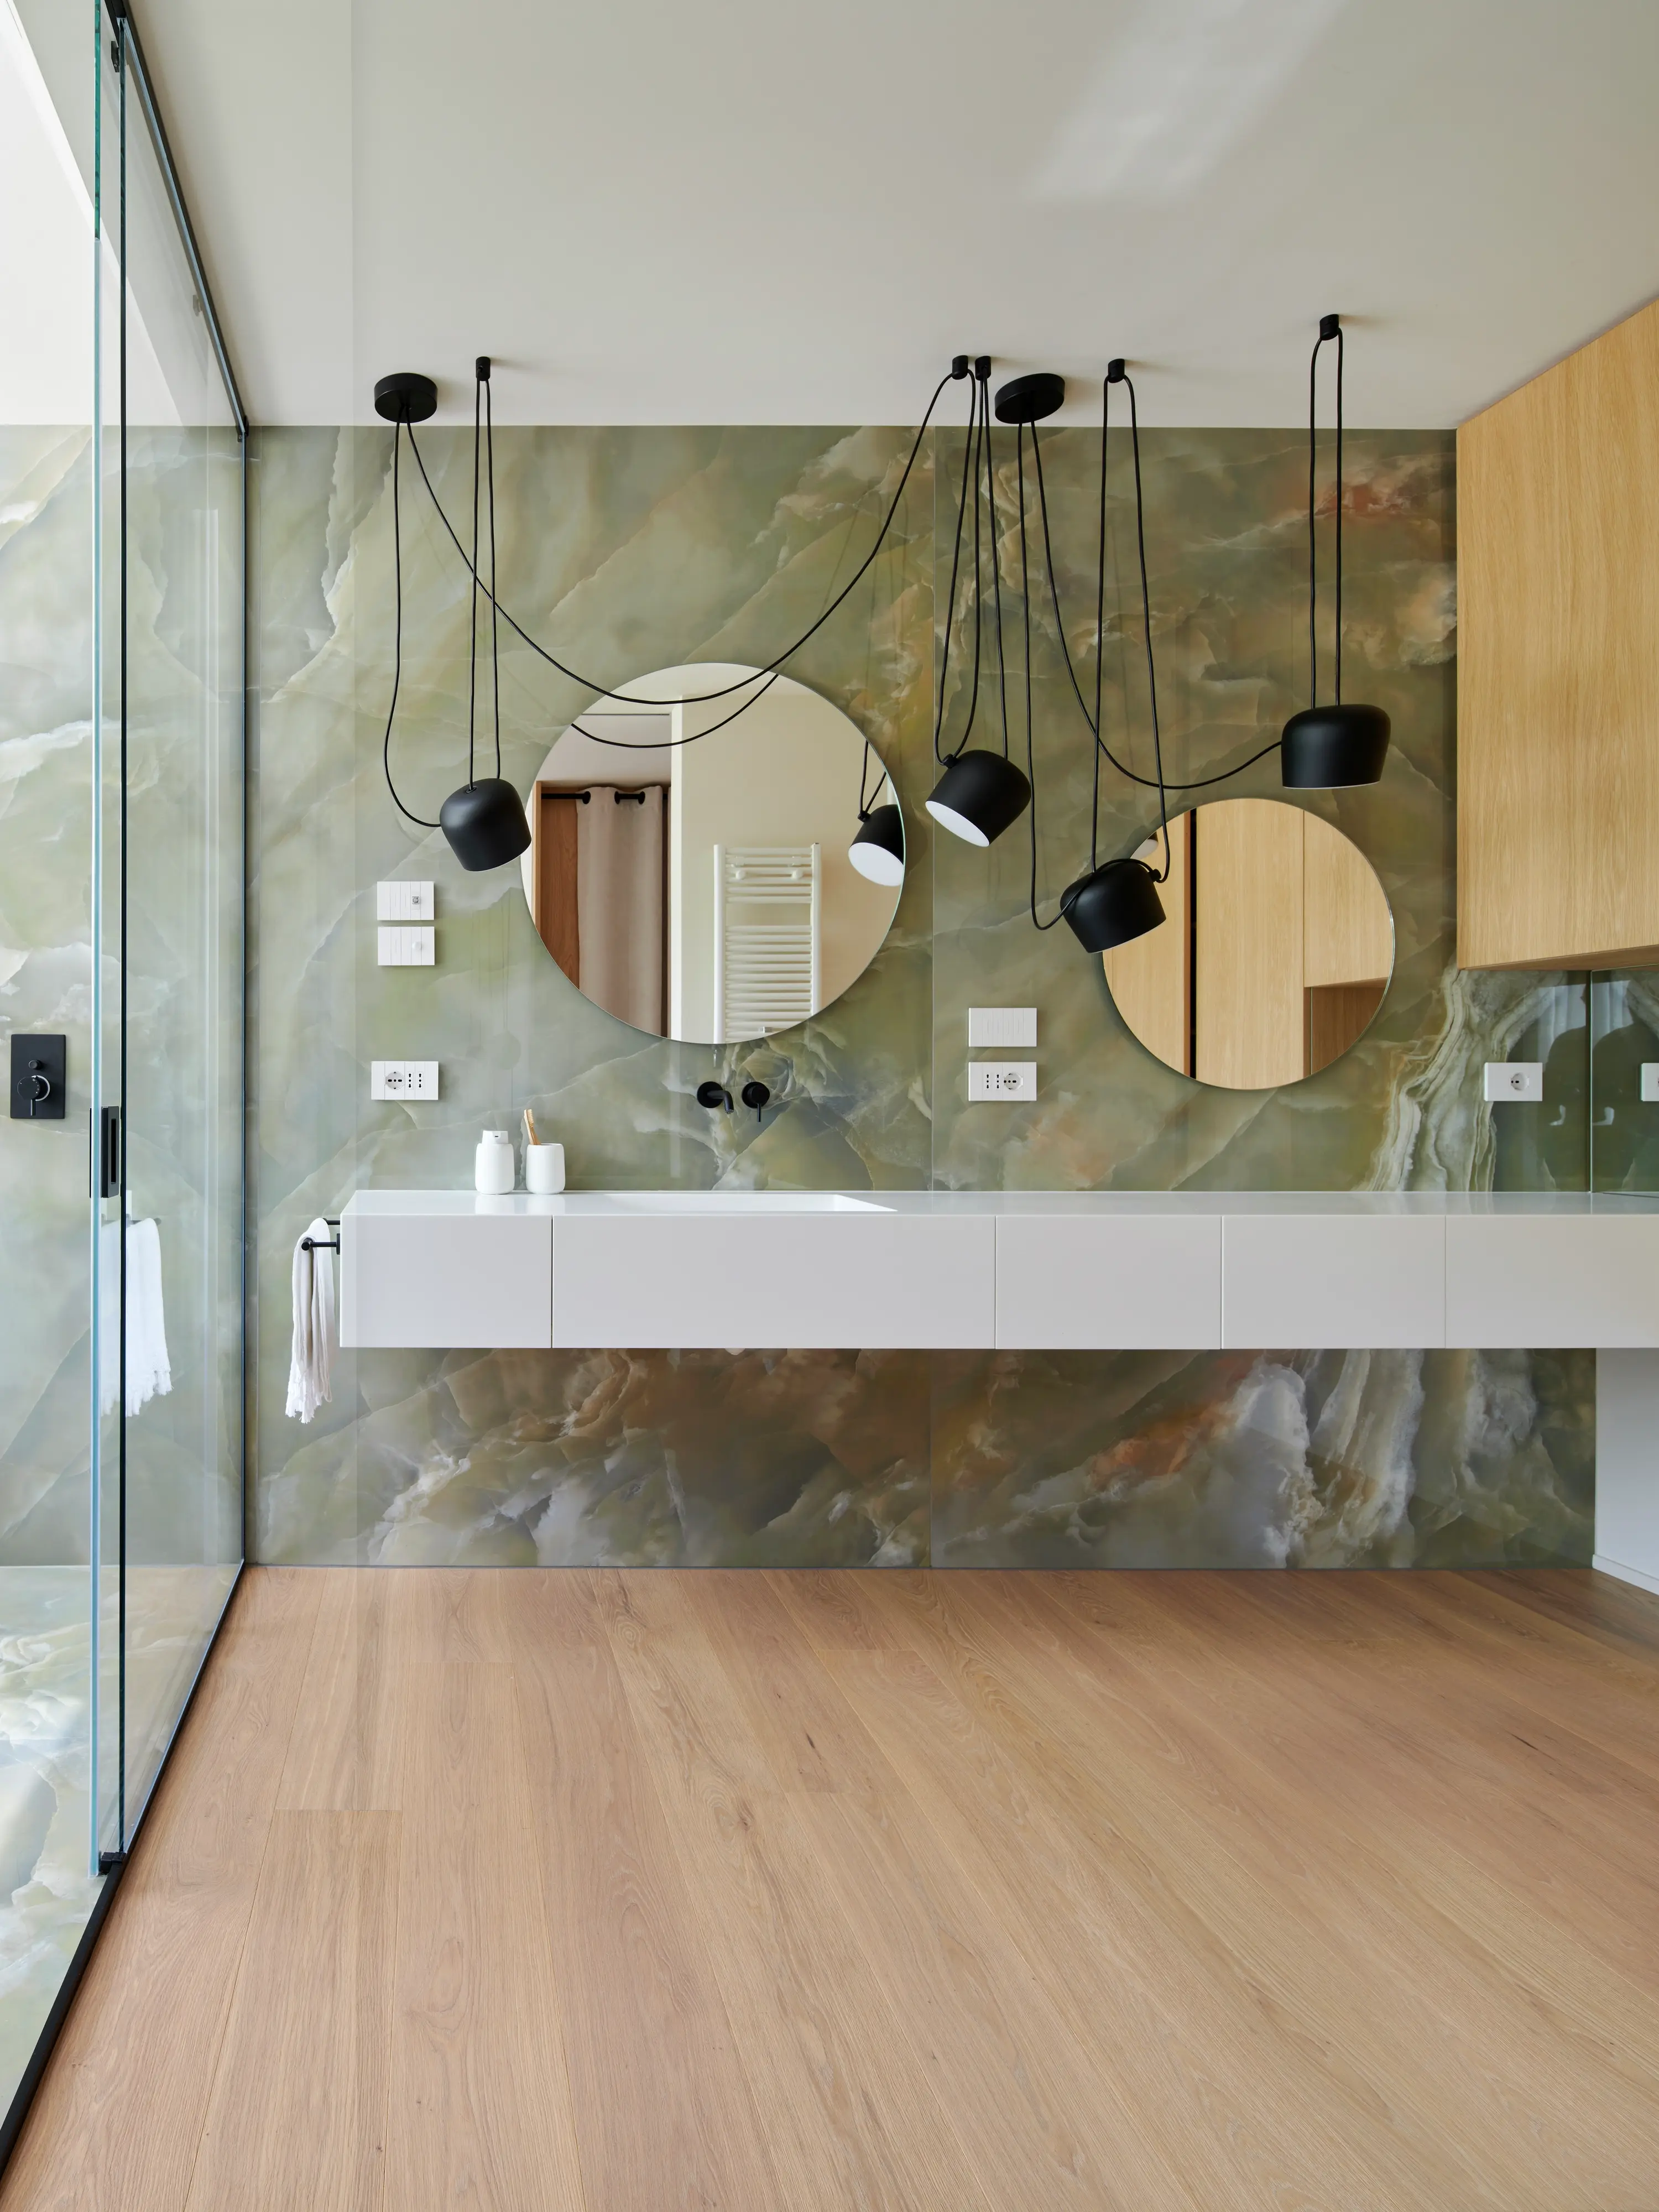 Salle de bain contemporaine avec des murs en marbre, des armoires en bois et des miroirs circulaires.